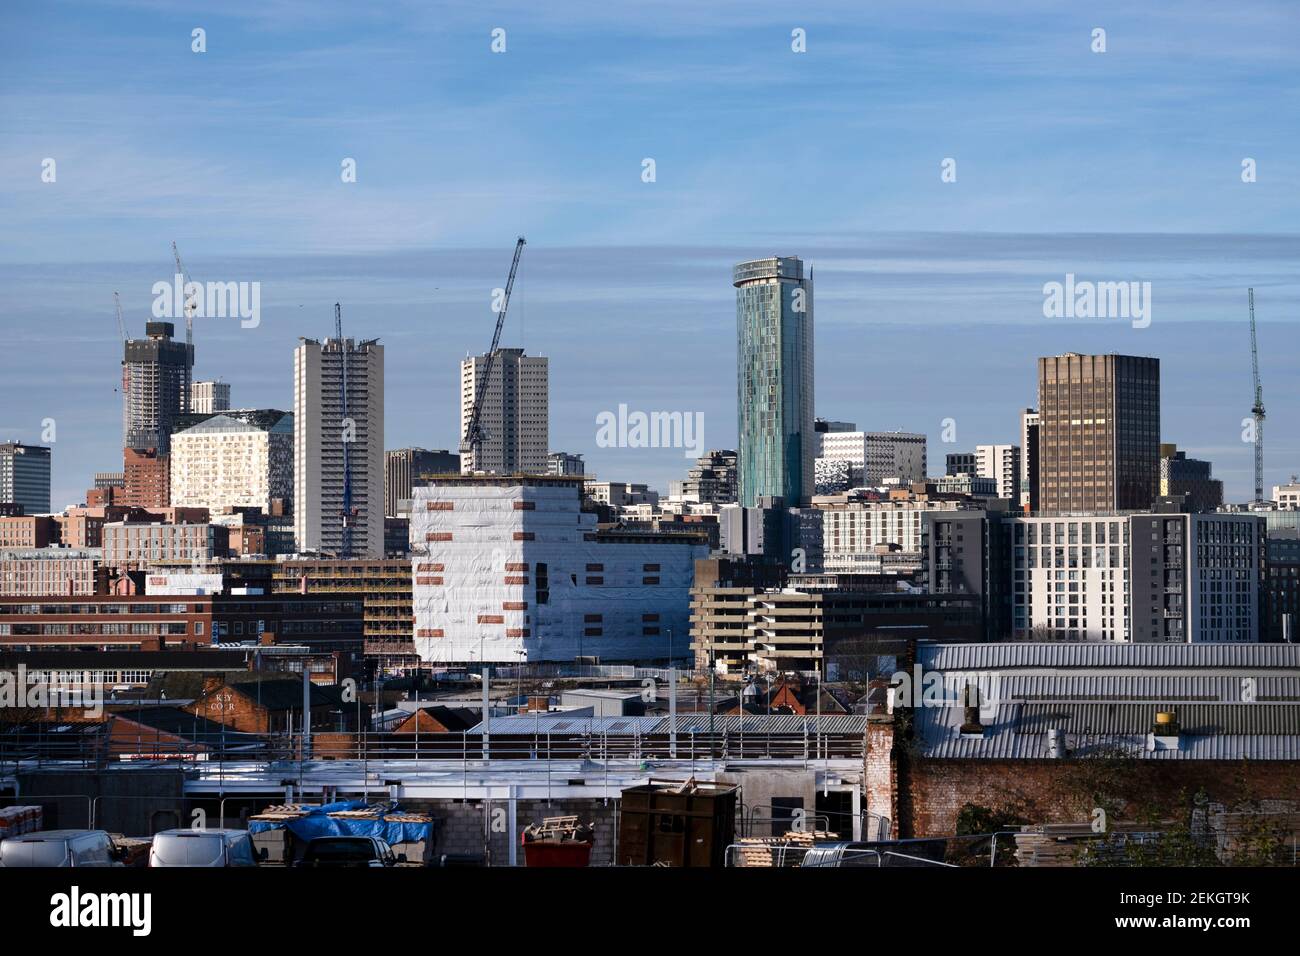 Vistas del centro de Birmingham, West Midlands, Inglaterra. Birmingham es la segunda ciudad de Inglaterra y está en proceso de desarrollo masivo. Foto de stock